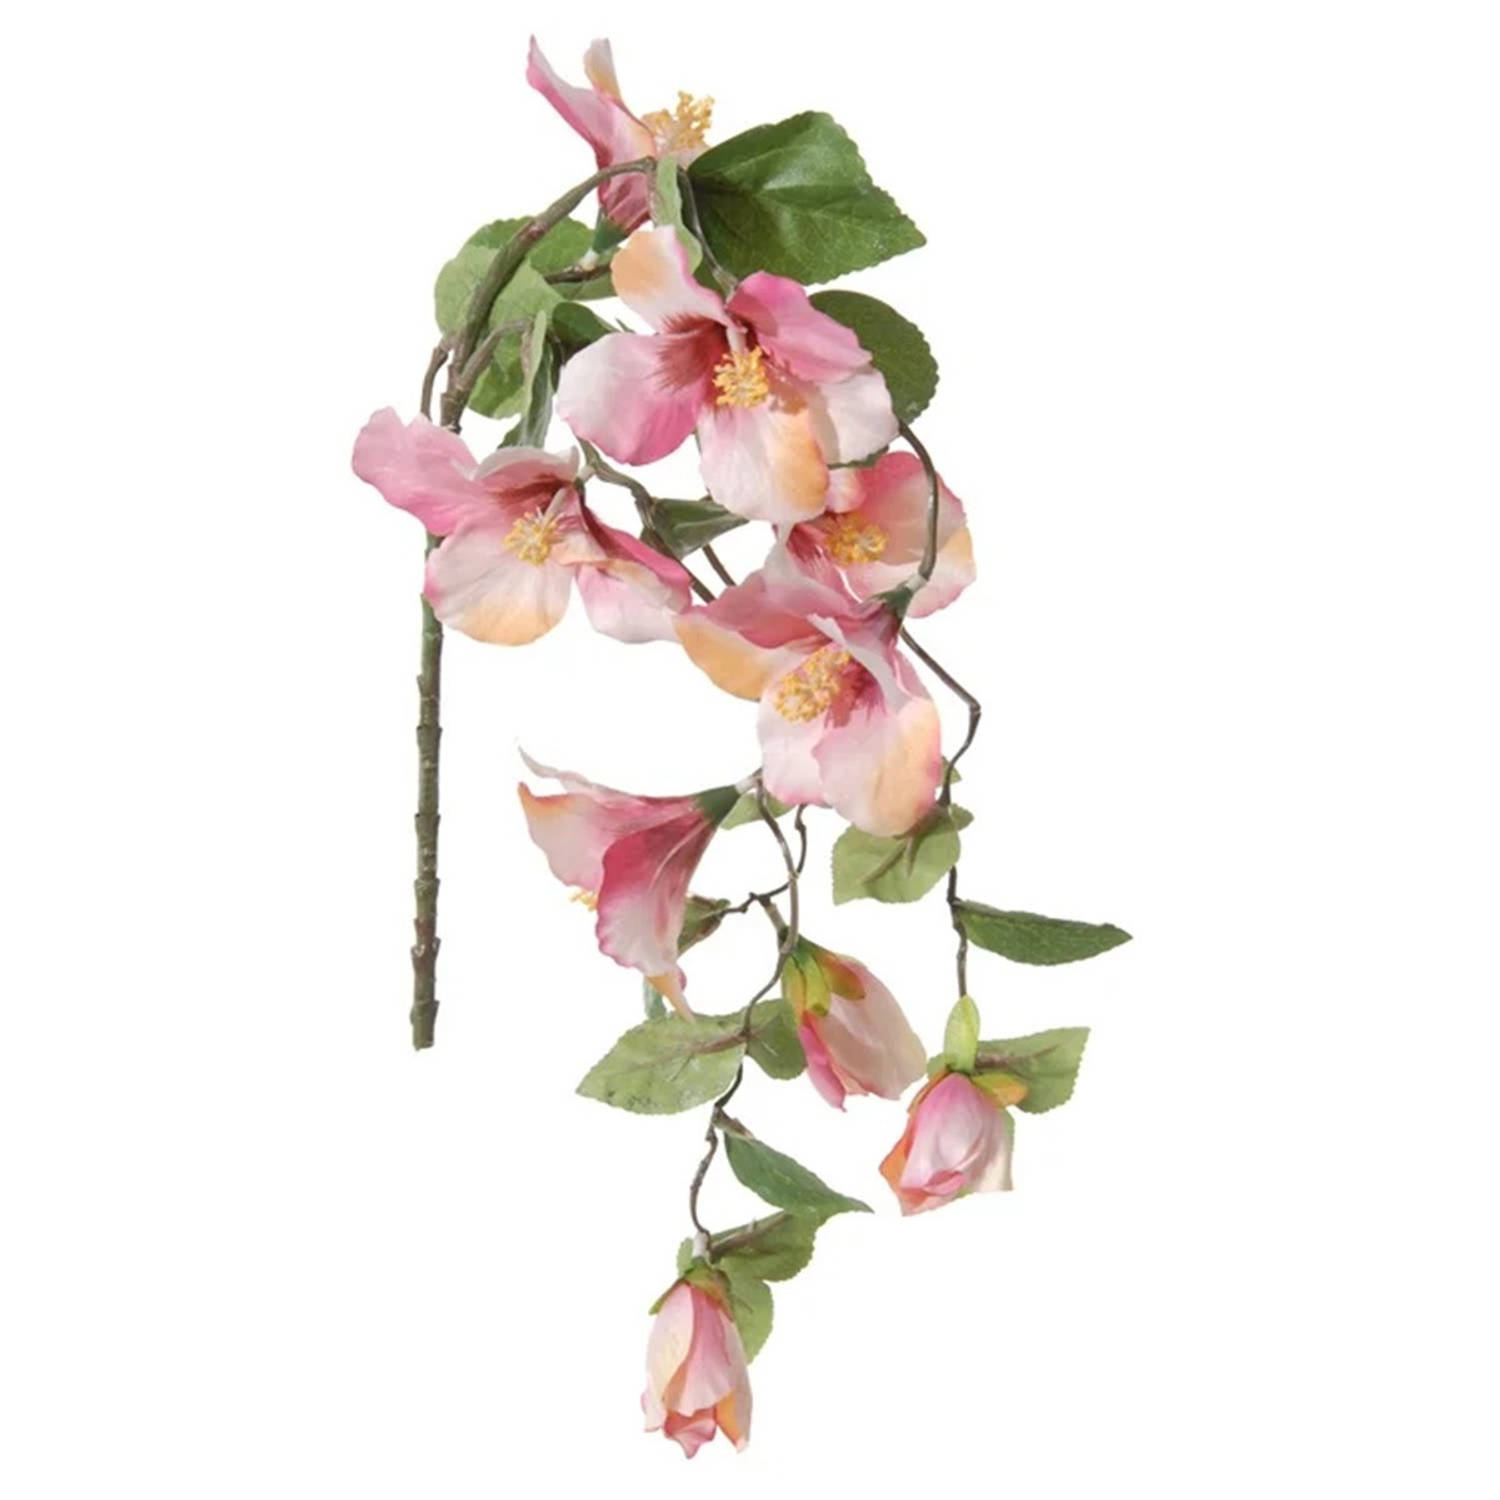 Louis Maes kunstbloemen - Hibiscus - roze - hangende tak van 165 cm - Hawaii/Zomer thema versiering